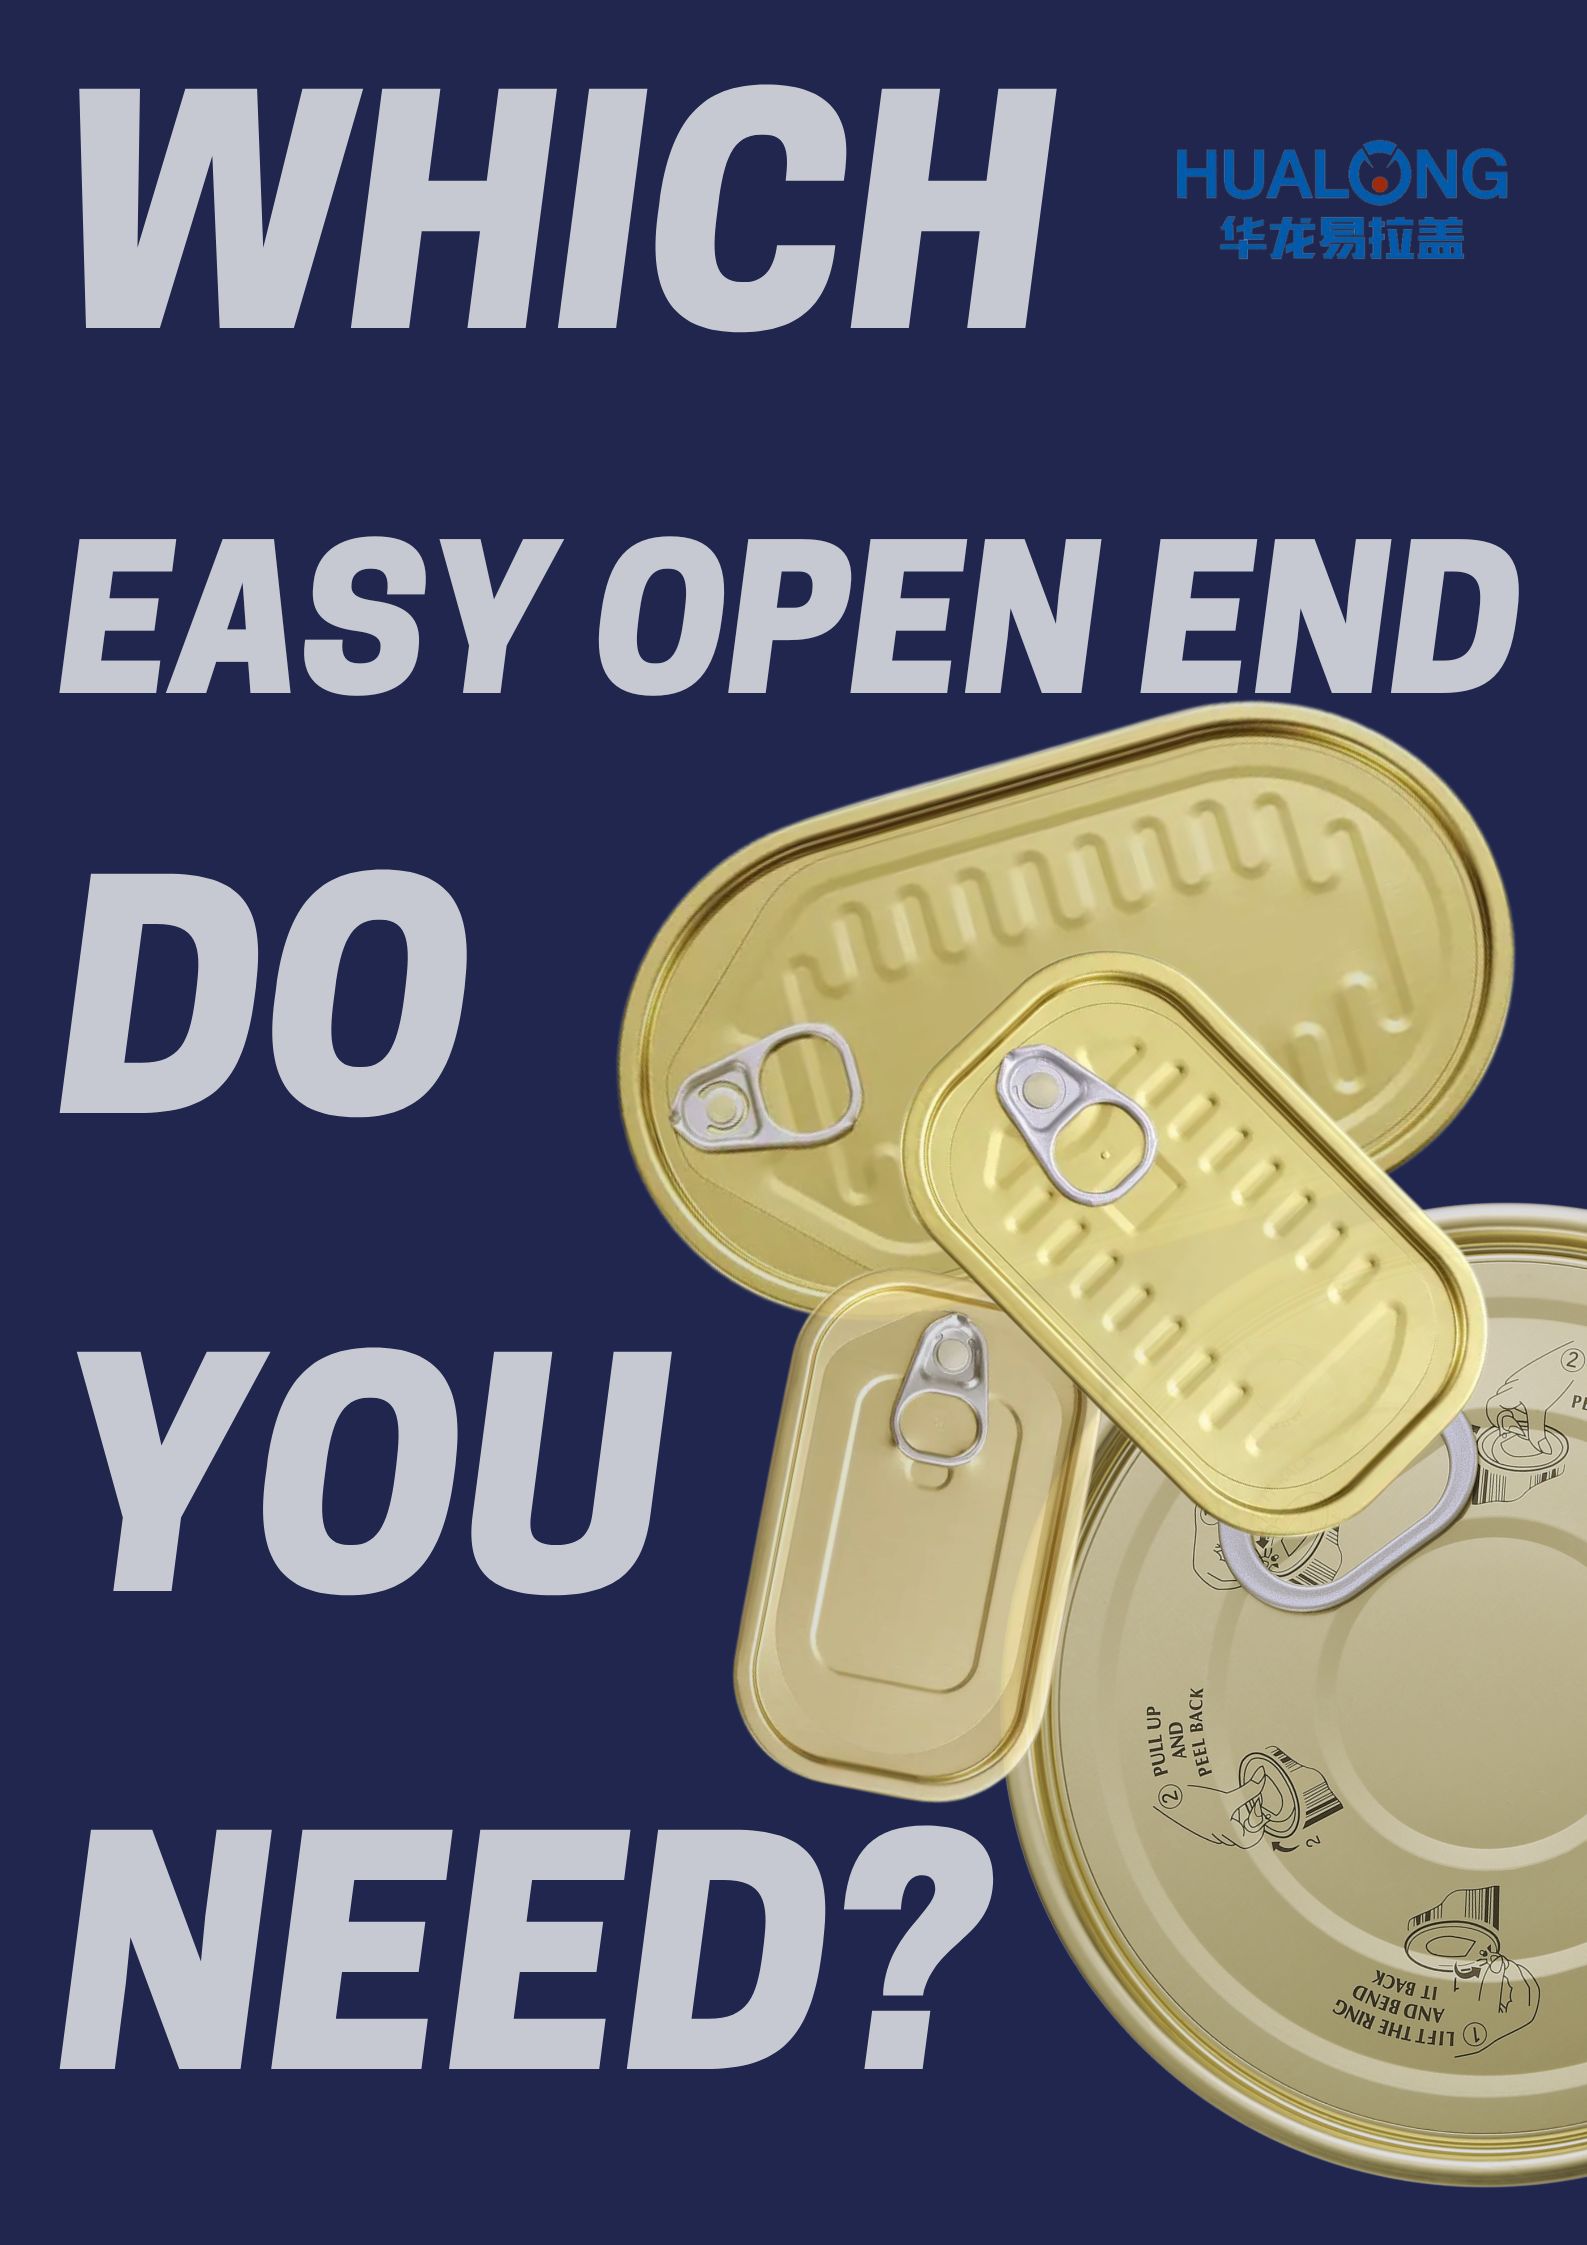 Que tipo de final aberto fácil necesitas?